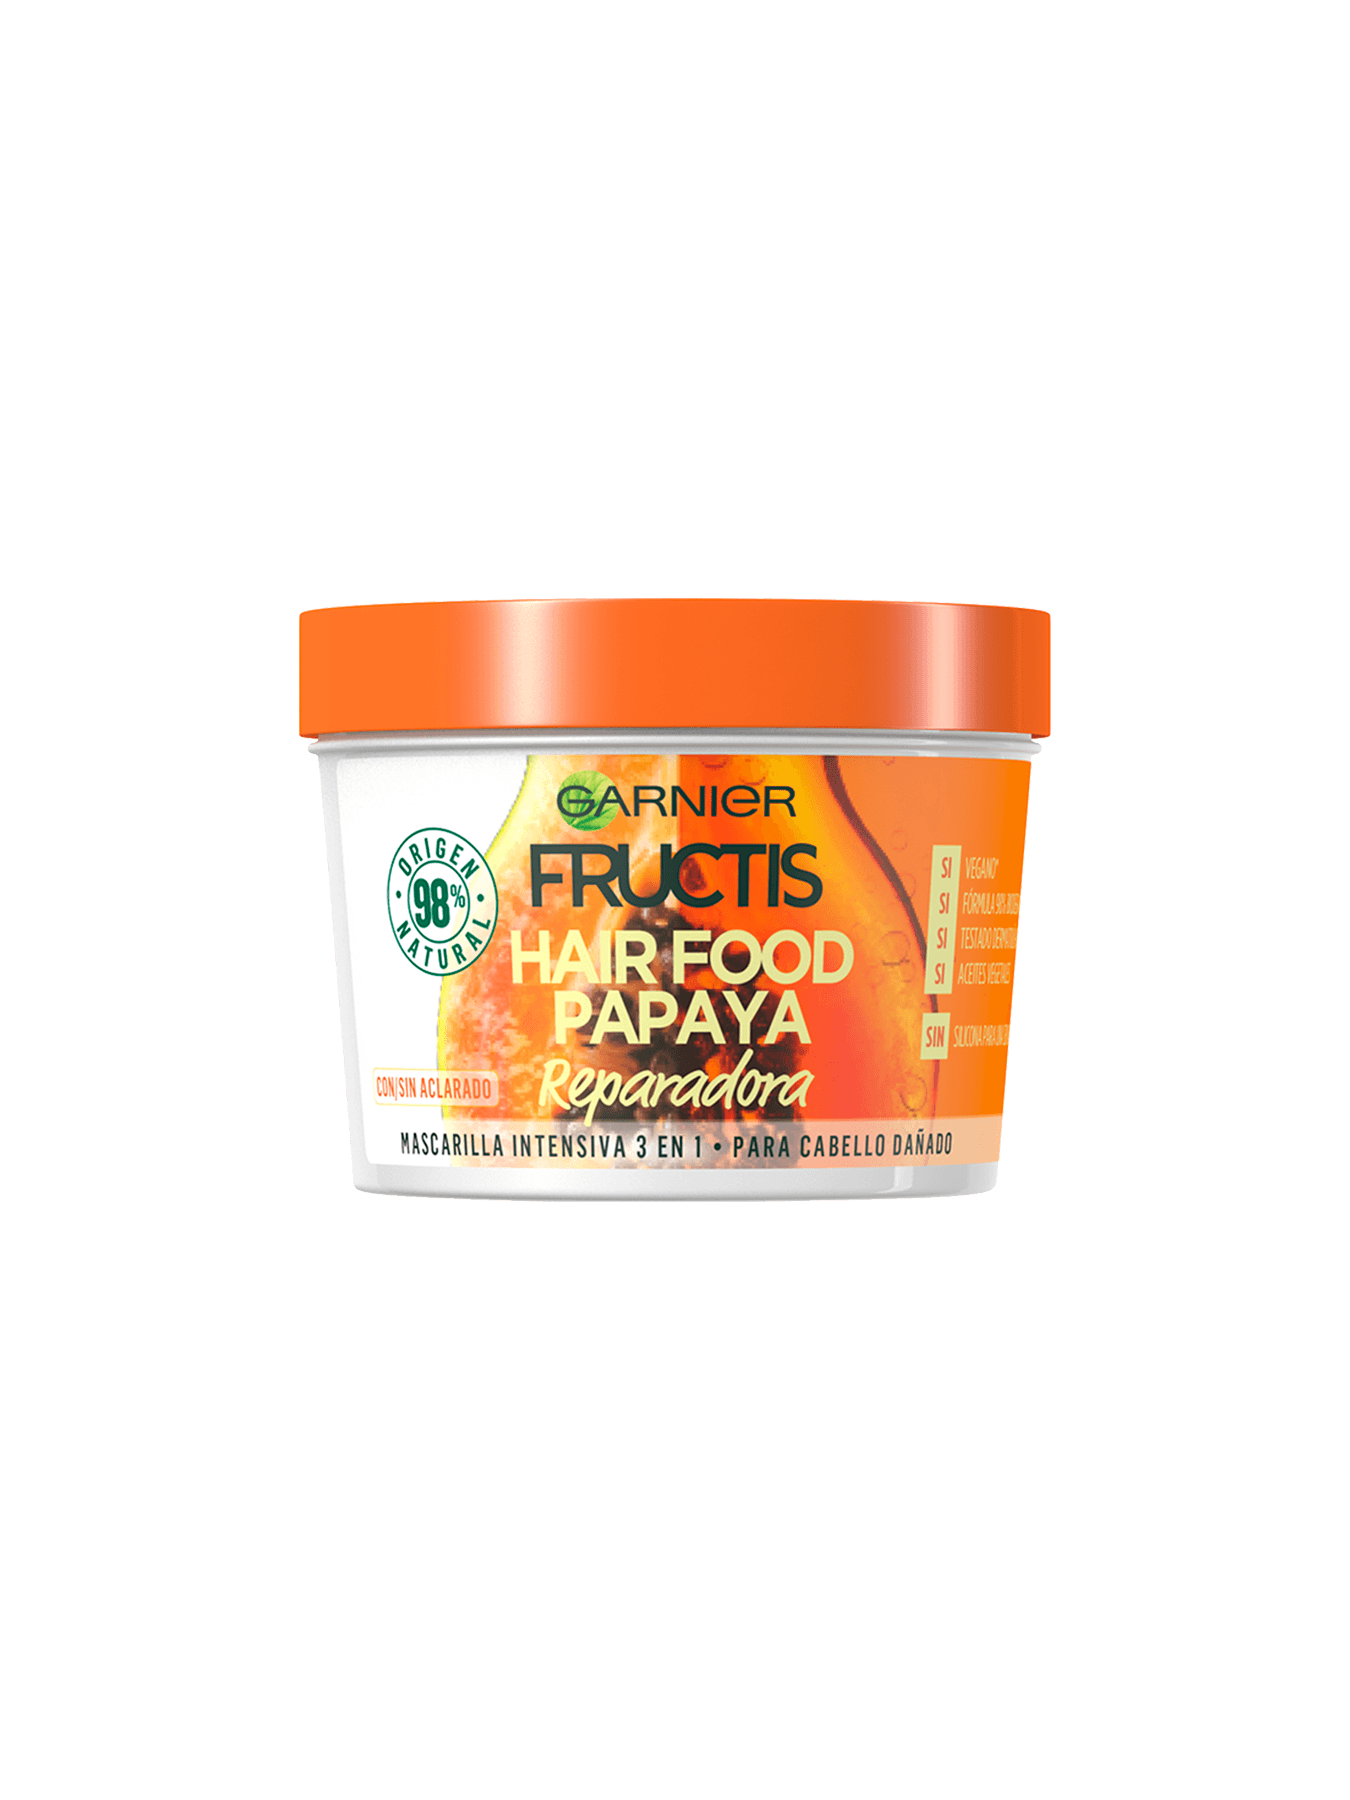 Hair Food Papaya: Mascarilla de papaya para el pelo 3 1 | Garnier